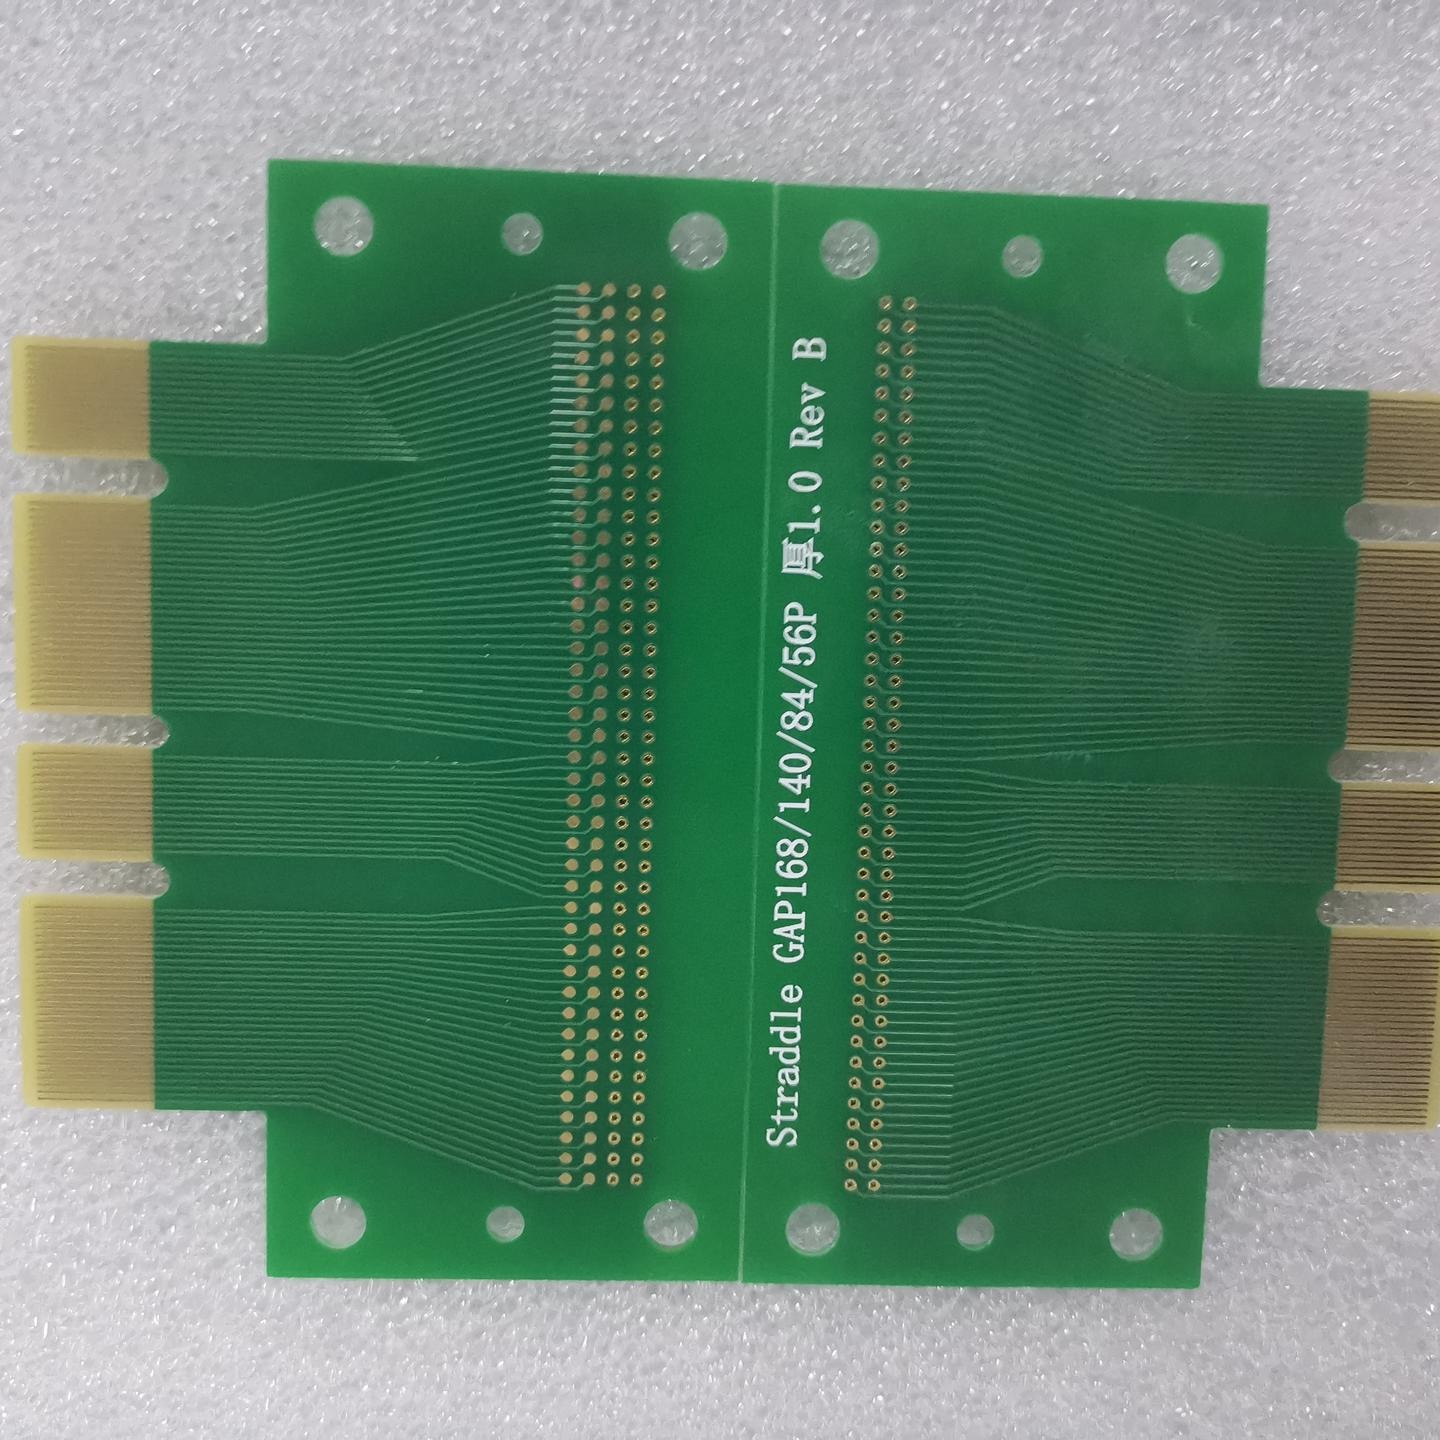 连接器线路板生产厂家 捷科供应连接器线路板加工定制